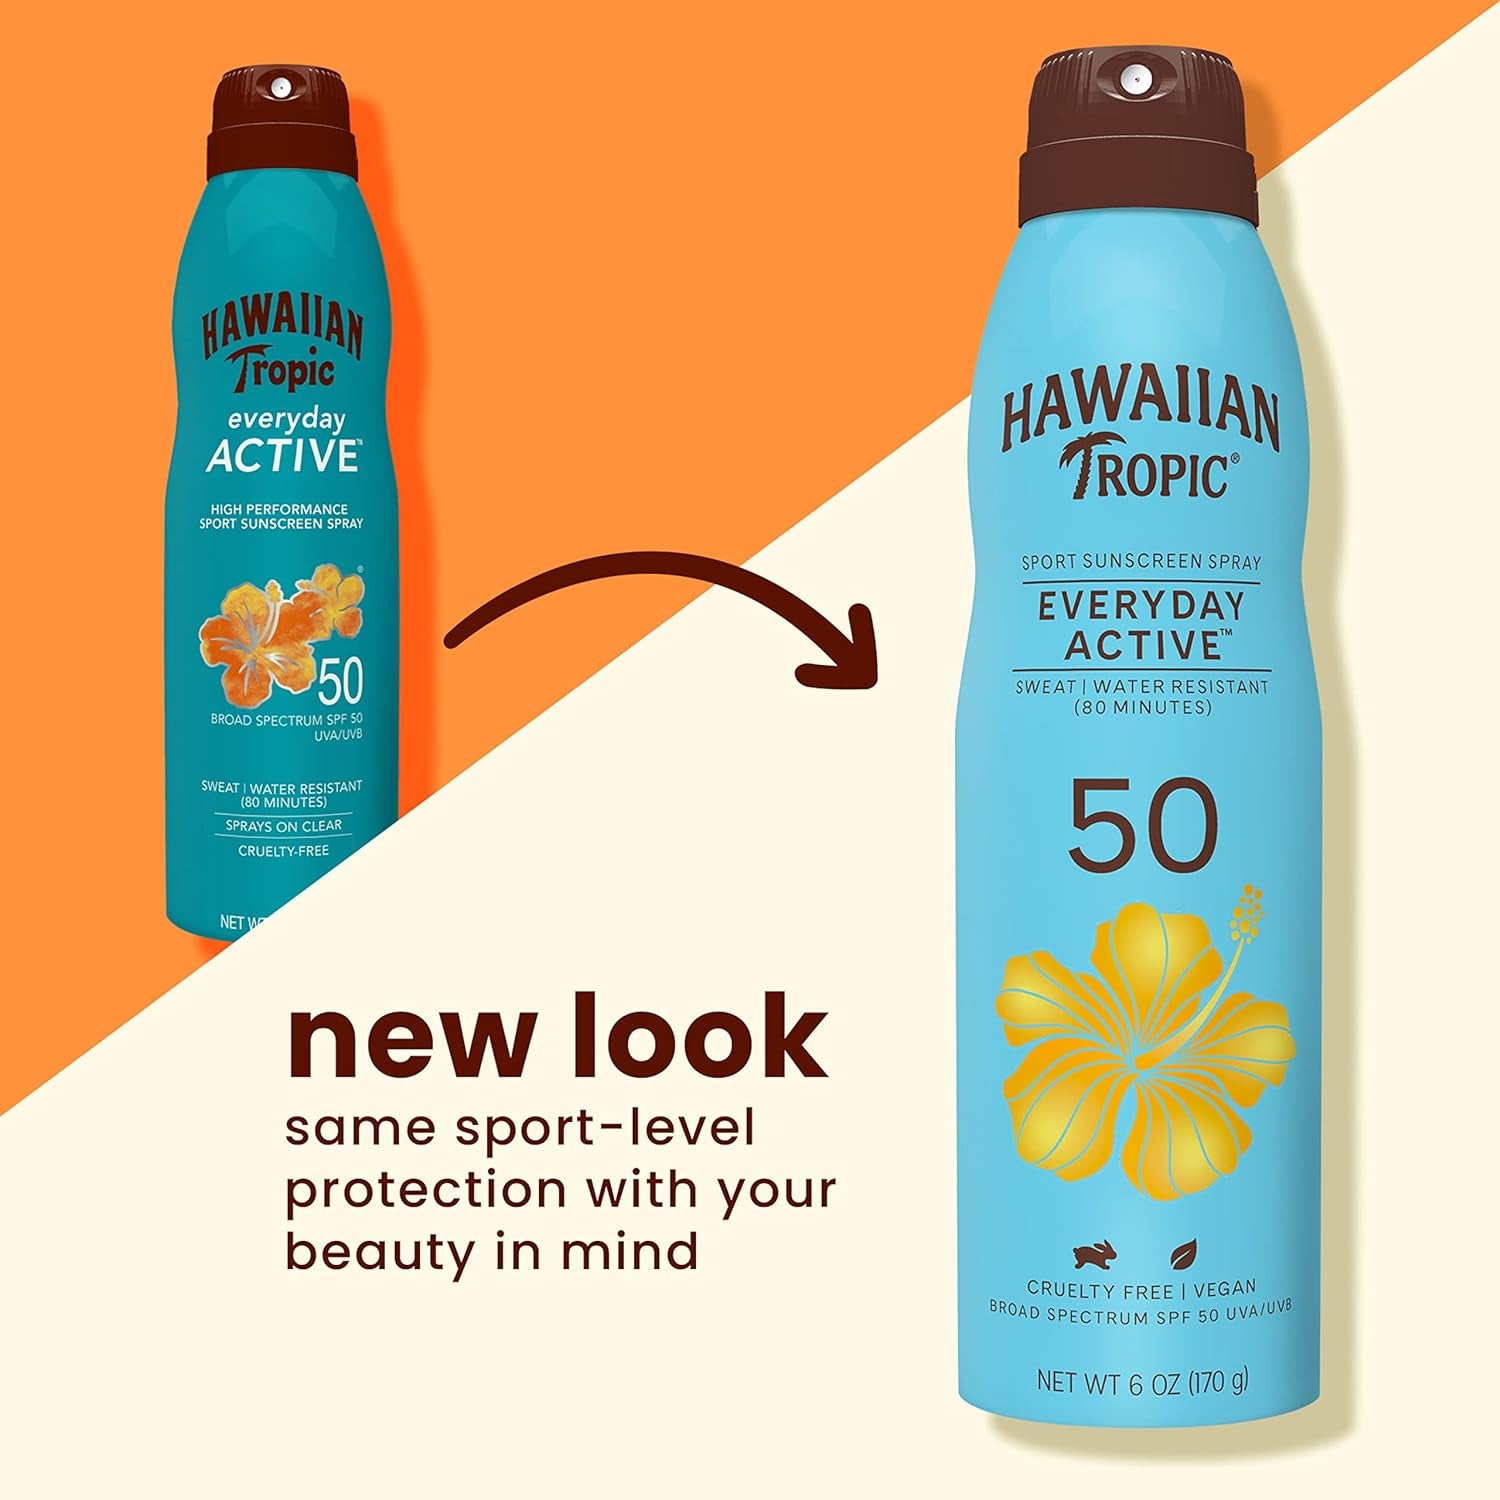 "2-Pack Hawaiian Tropic Everyday Active SPF 50 Sunscreen Spray, 6oz Each"